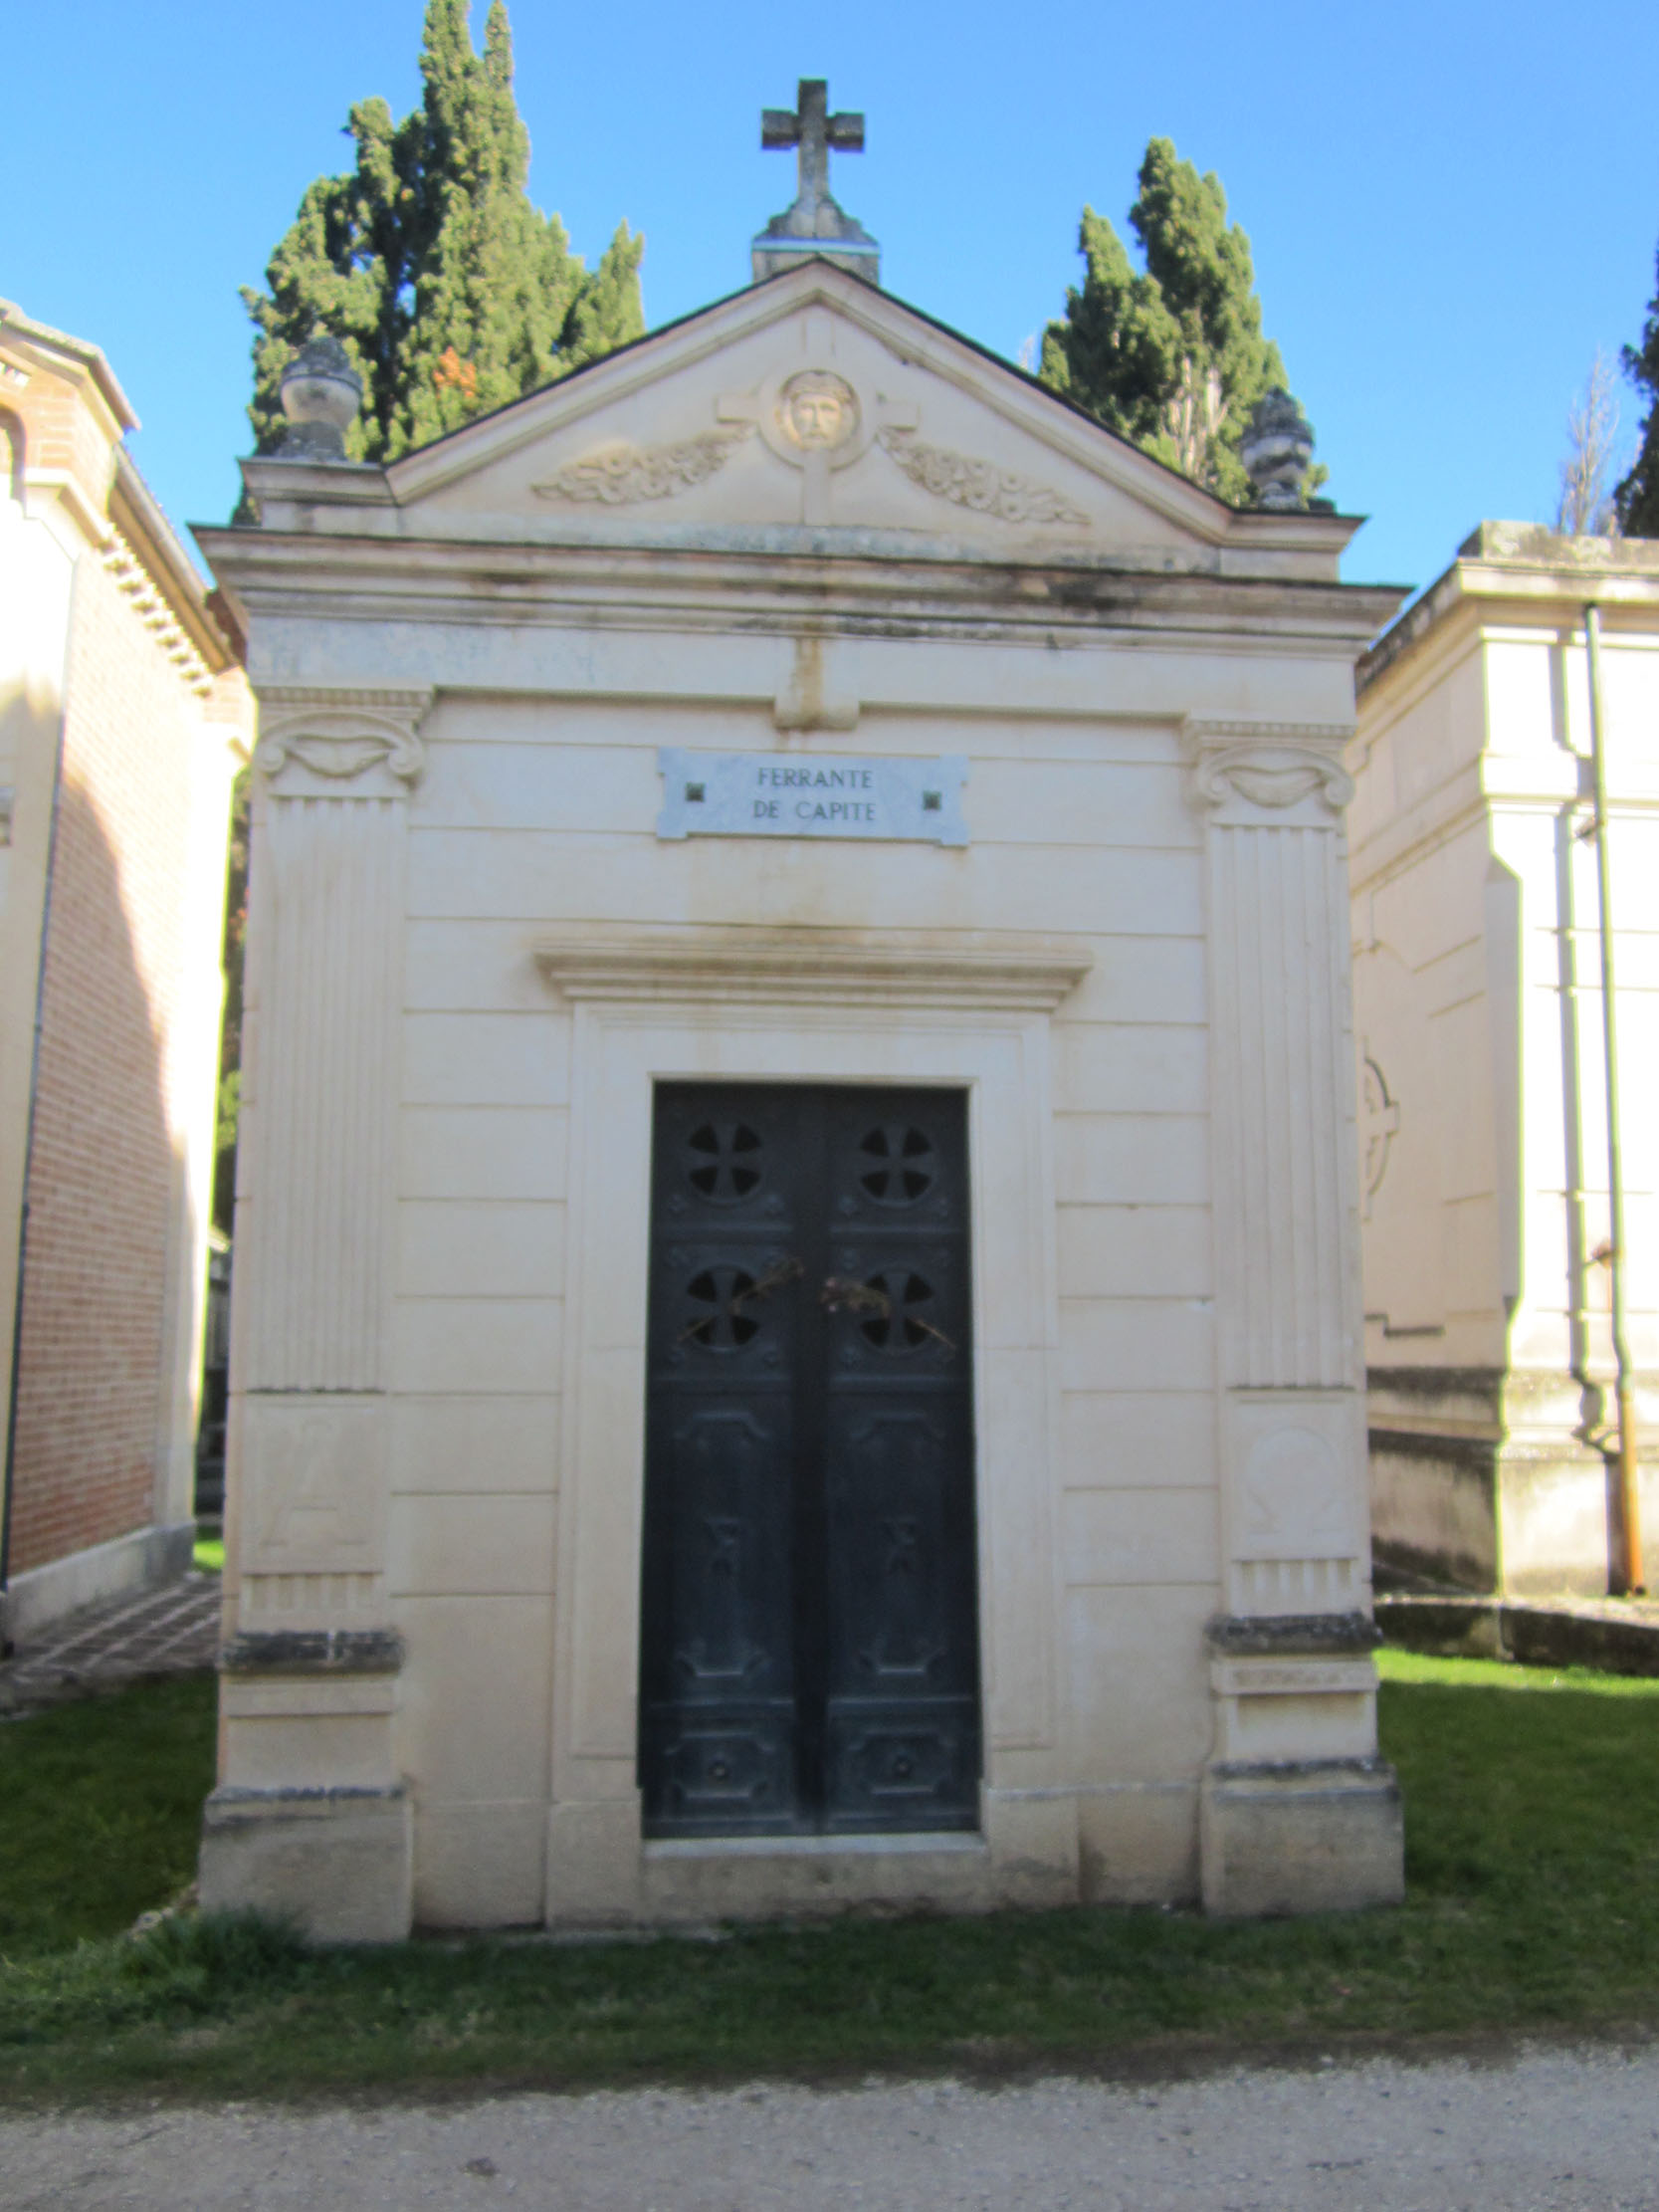 Cappella cimiteriale Ferrante De Capite (cimitero, monumentale) - Sulmona (AQ) 